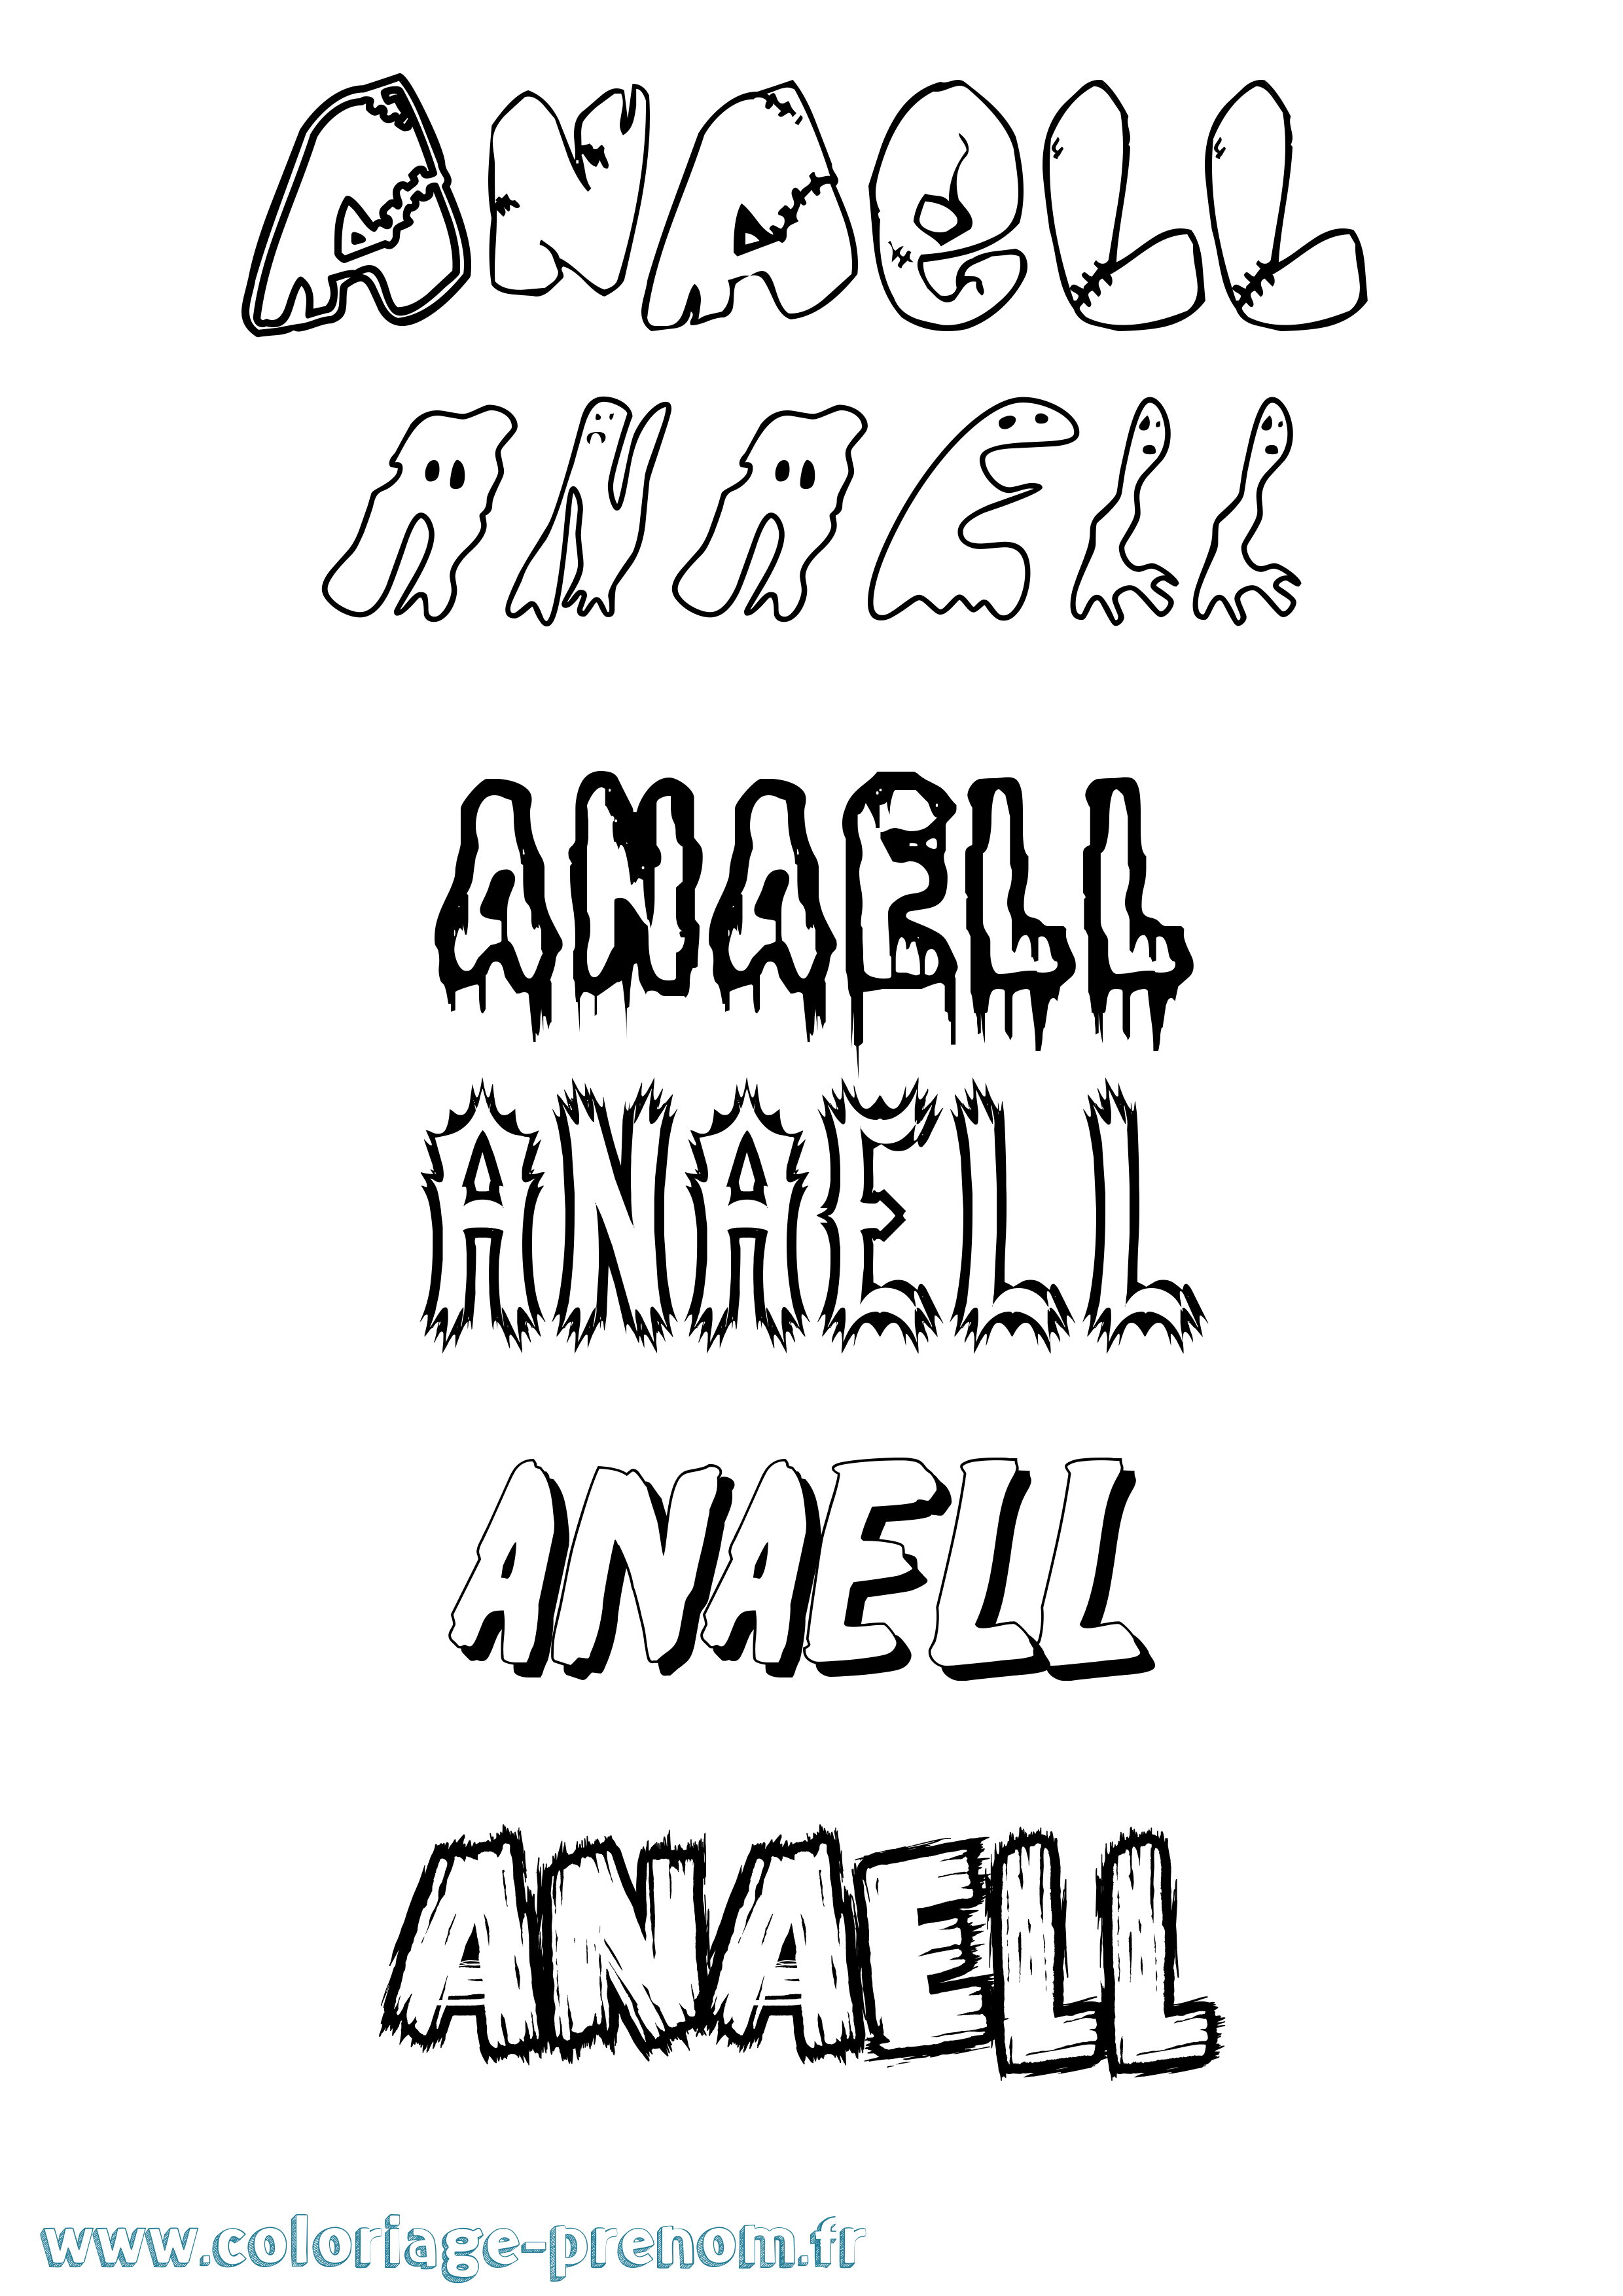 Coloriage prénom Anaell Frisson